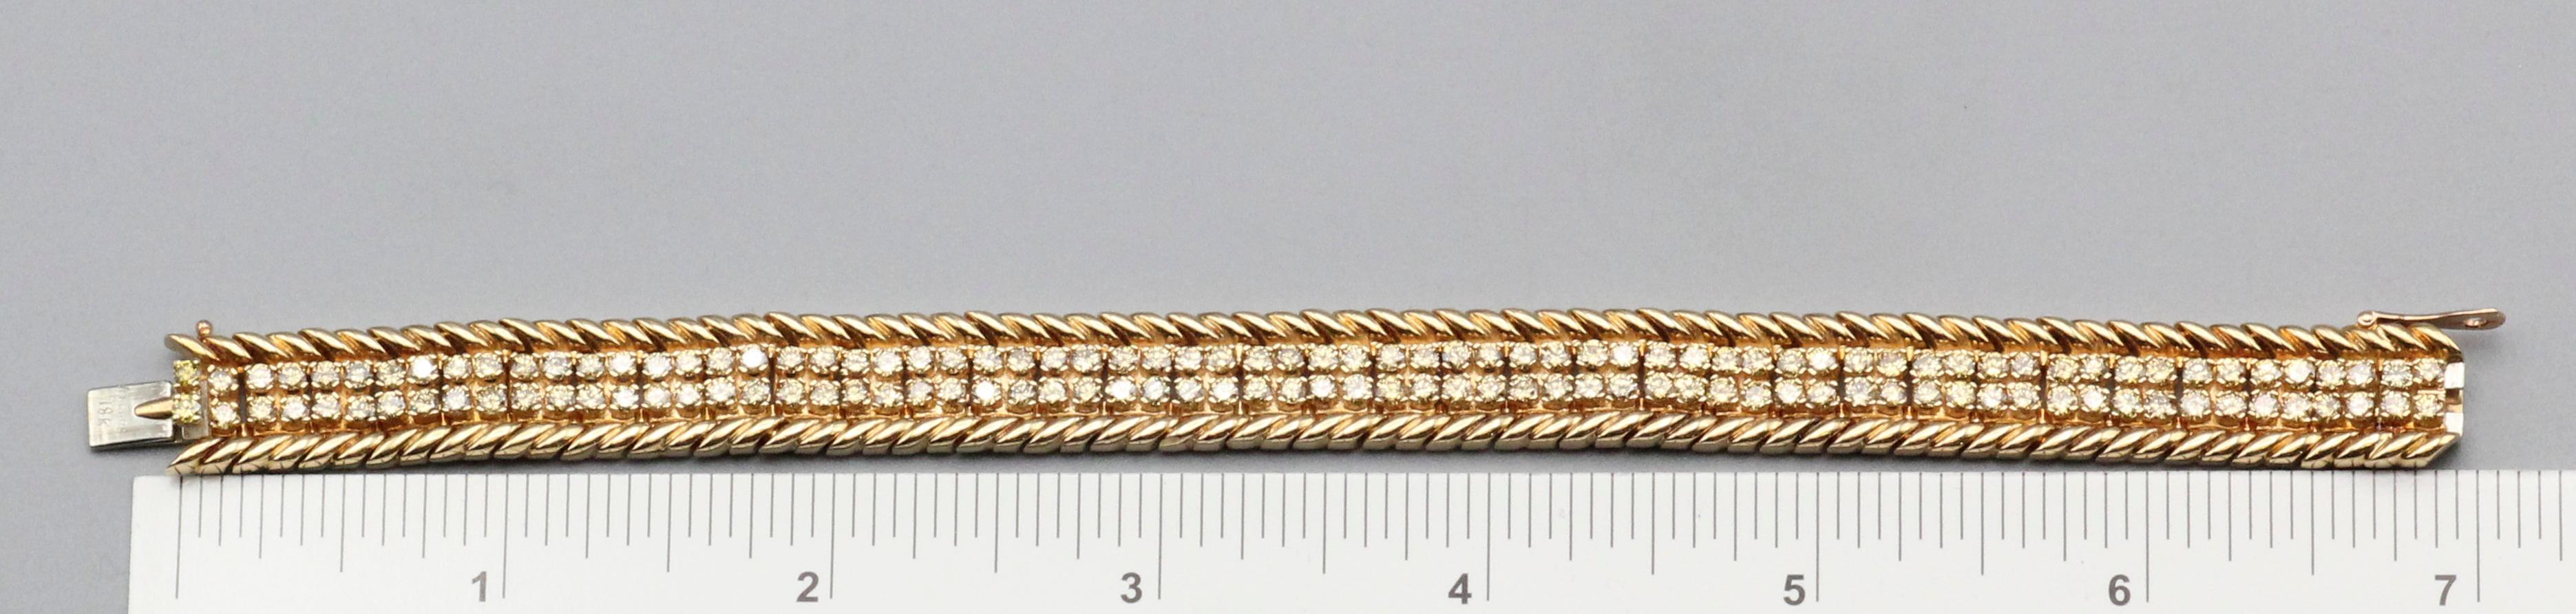 Die Verdura  Das Armband Fancy Yellow Diamond and 18k Gold ist ein exquisites und luxuriöses Stück, das die Essenz der ikonischen Designs von Verdura einfängt. Die Stücke von Verdura sind für ihre Handwerkskunst und einzigartige Ästhetik bekannt und